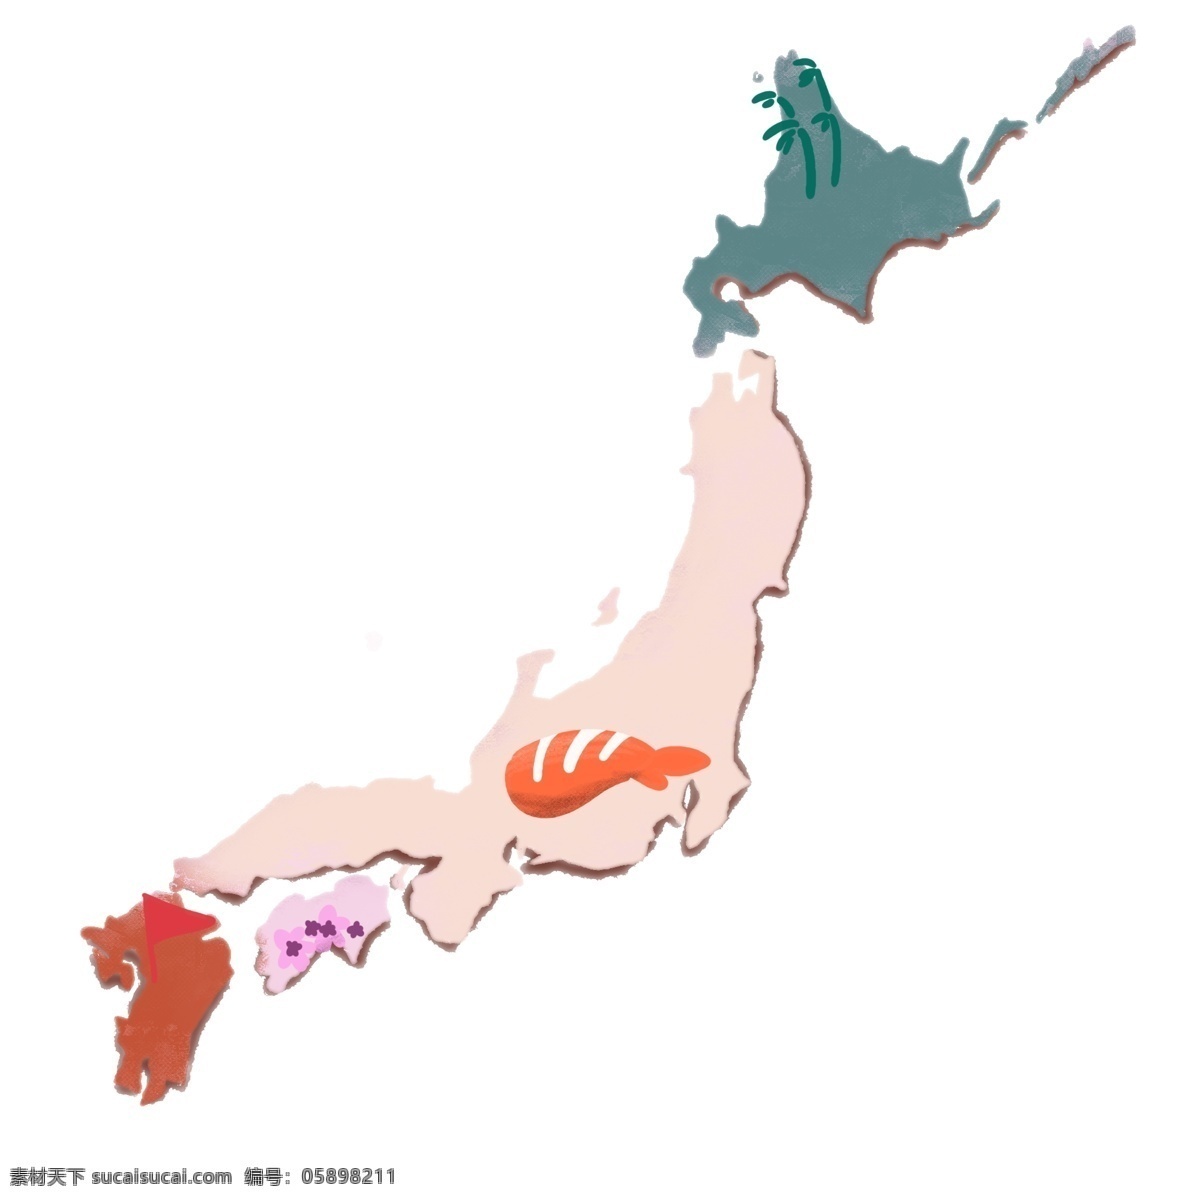 彩色 日本 地图 插画 日本地图 日本文化 彩色日本地图 世界地图插画 立体图插画 创意 图标